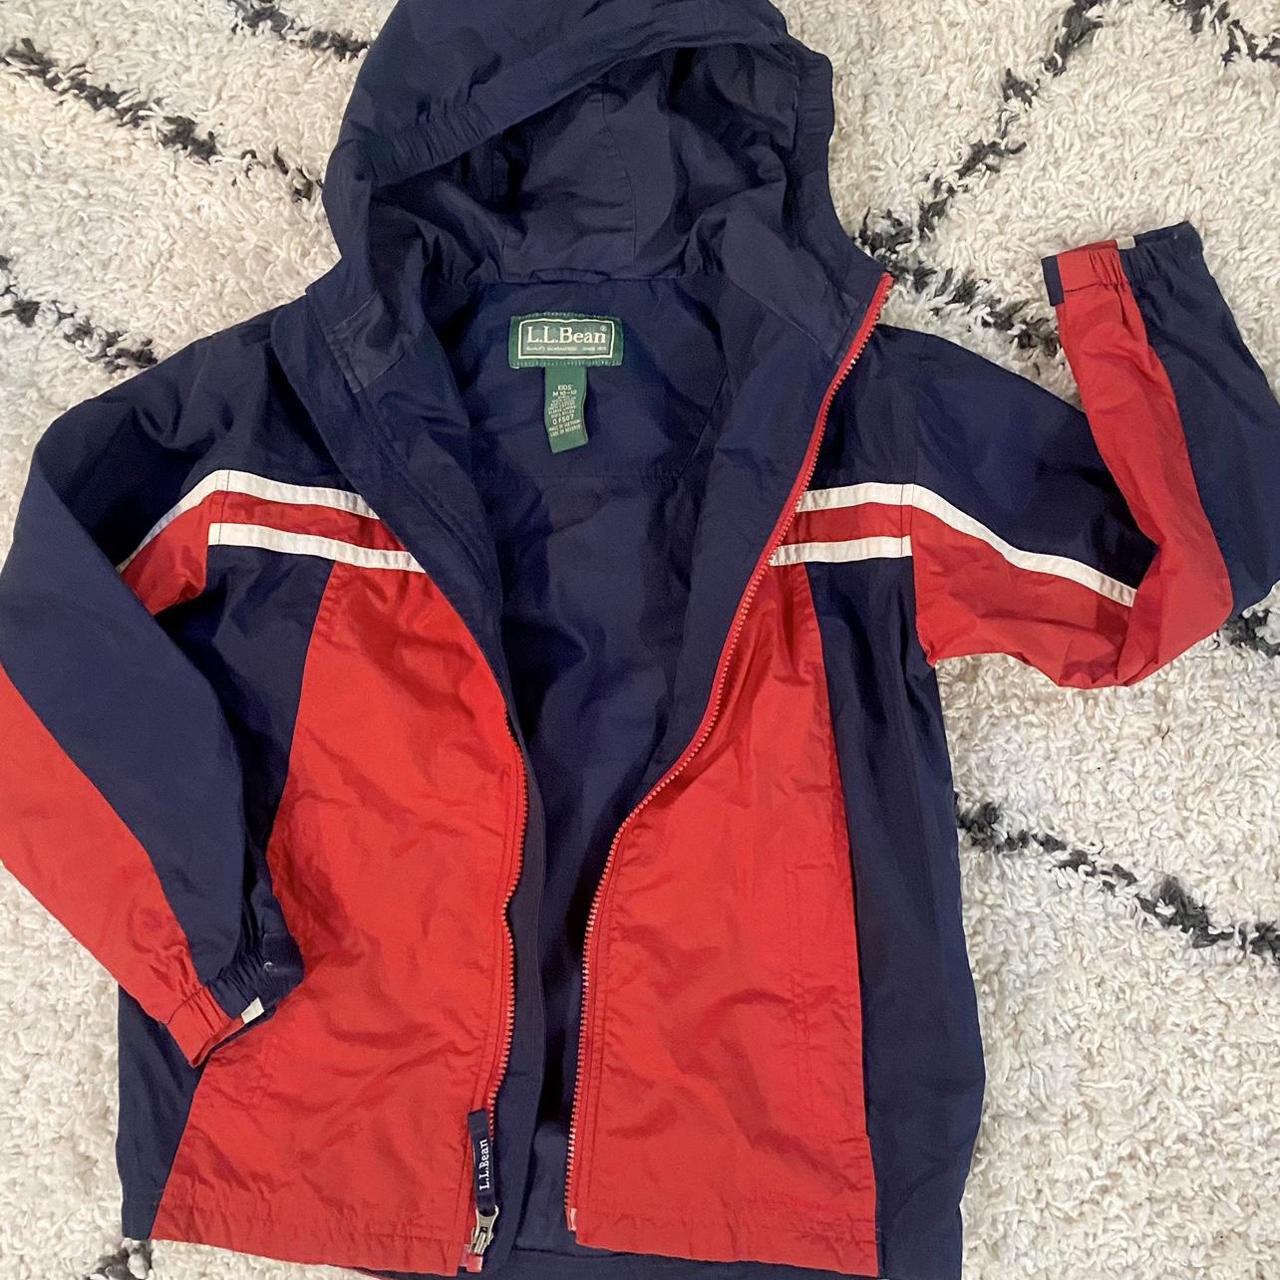 Llbean vintage windbreaker jacket -kids size... - Depop